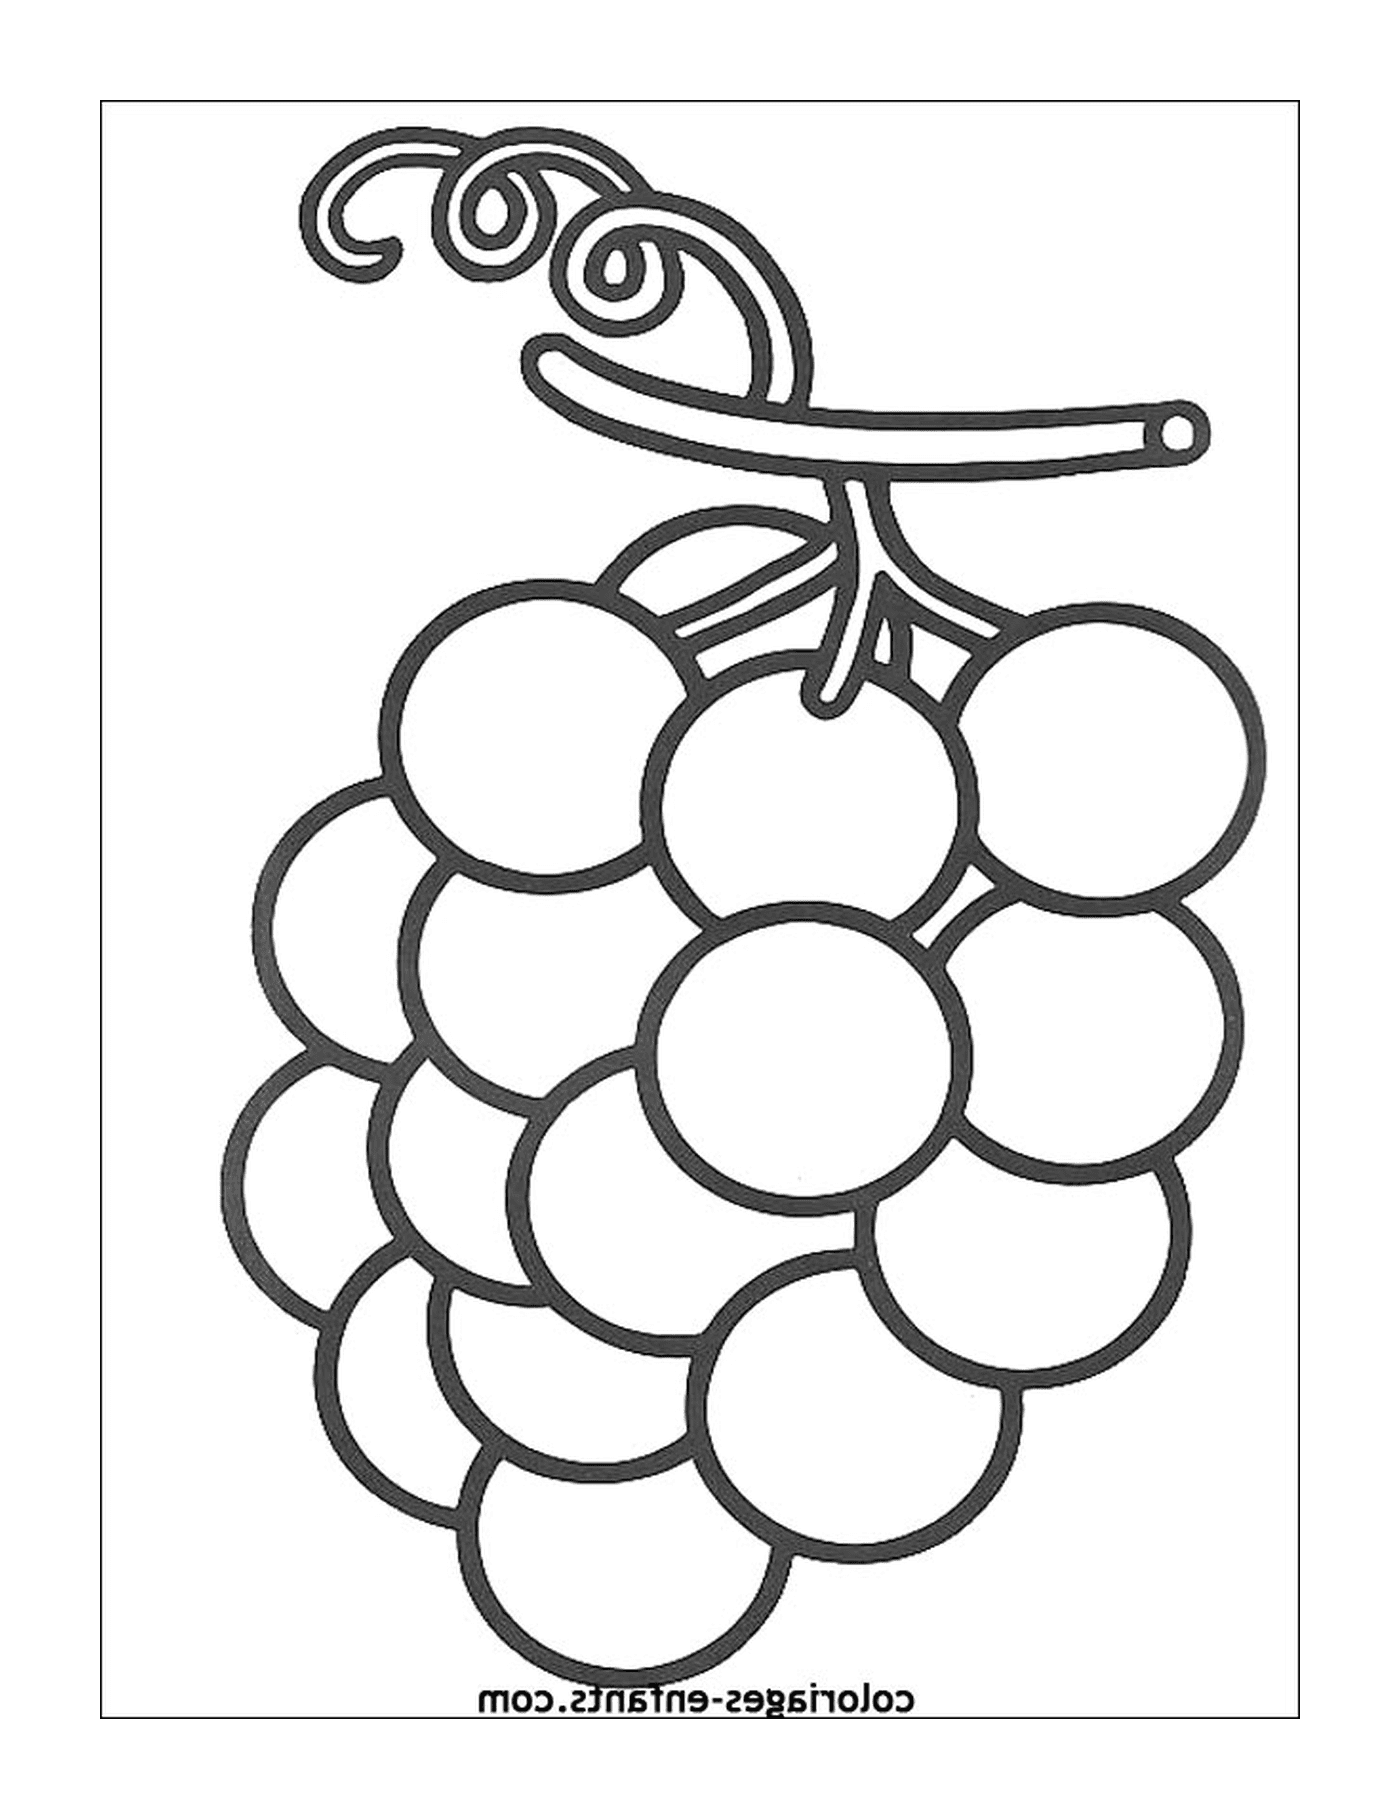  grappoli di uve fresche 